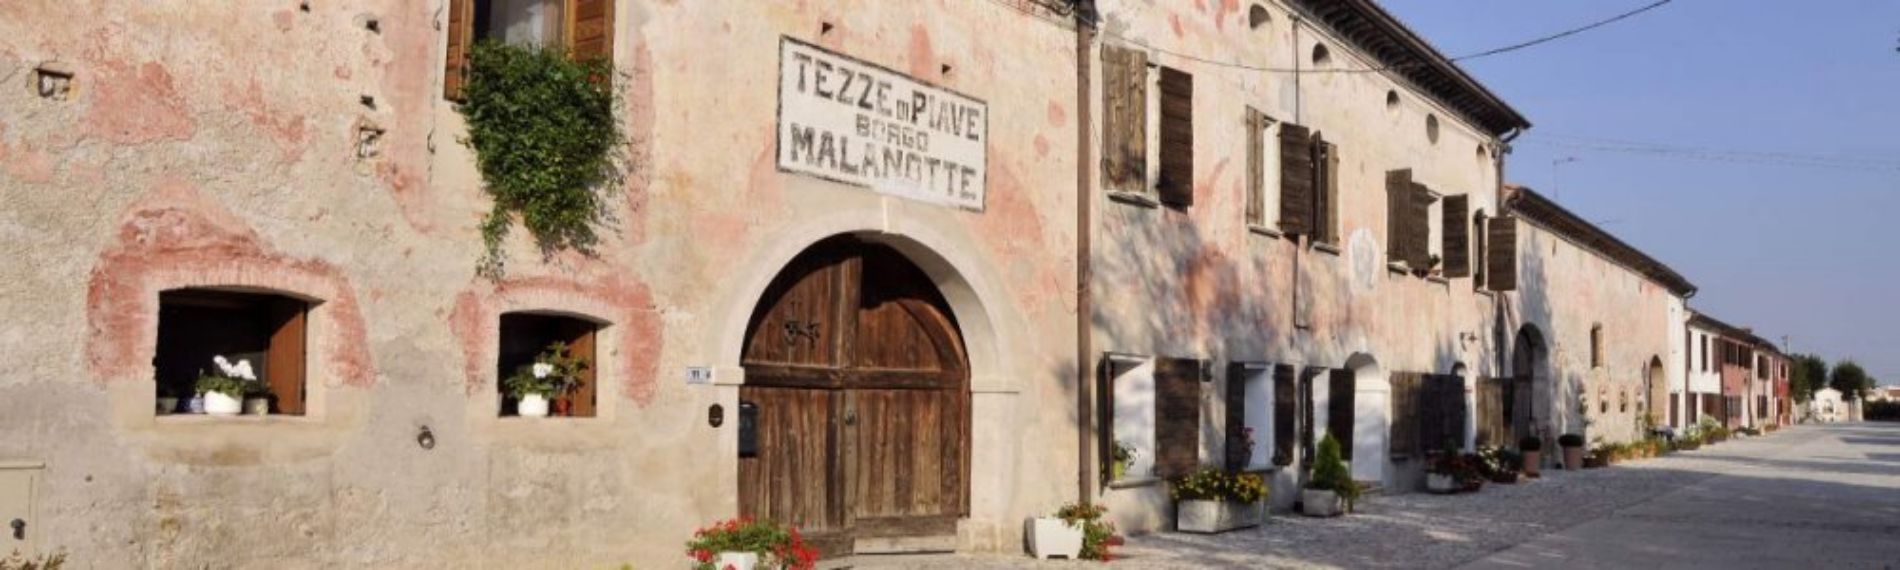 Borgo Malanotte